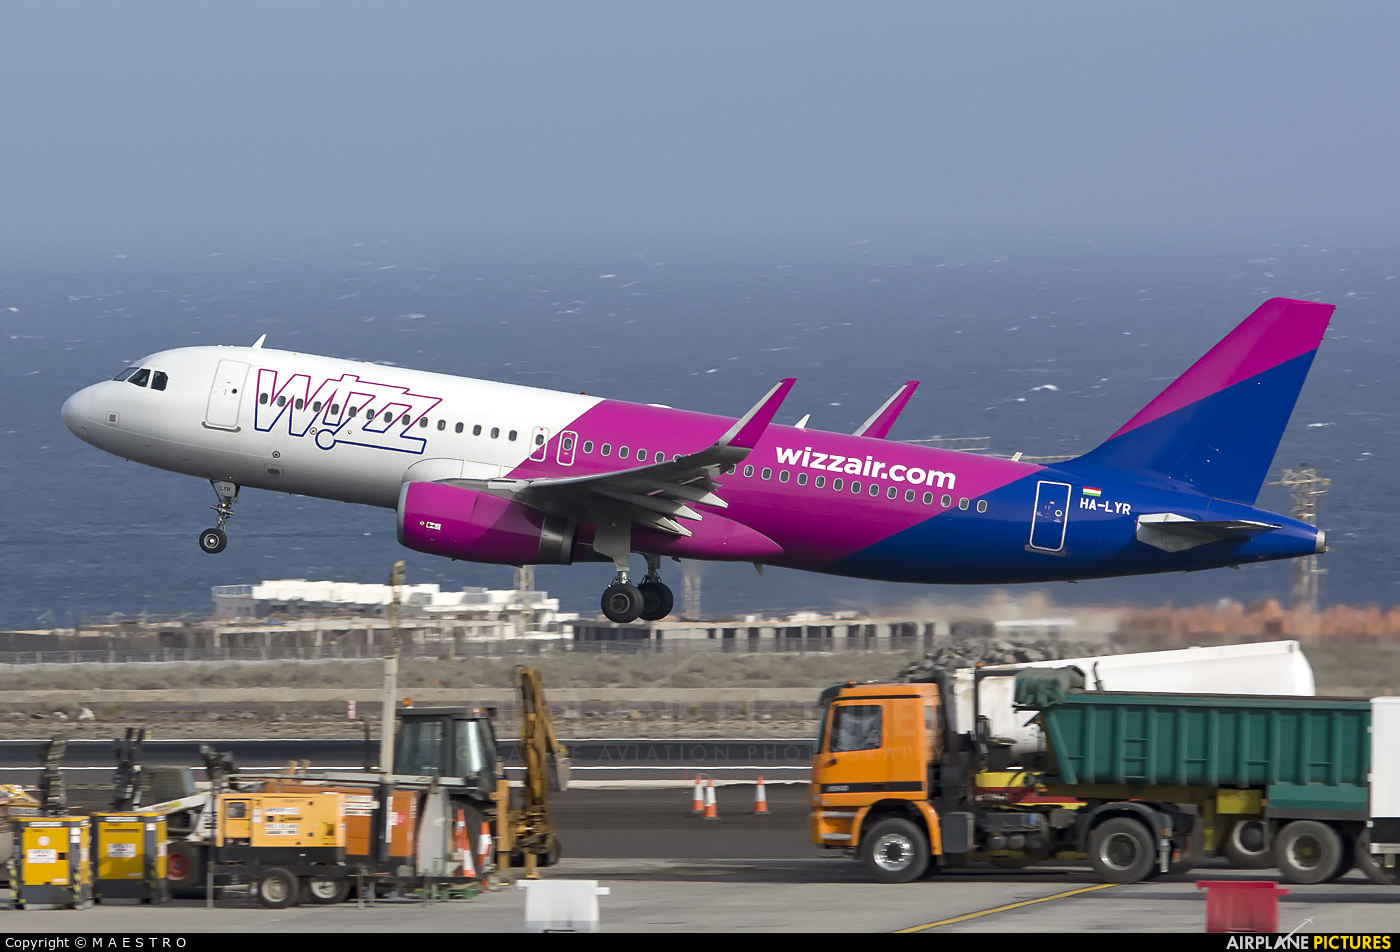 Wizz Air HA-LYR aircraft at Tenerife Sur - Reina Sofia